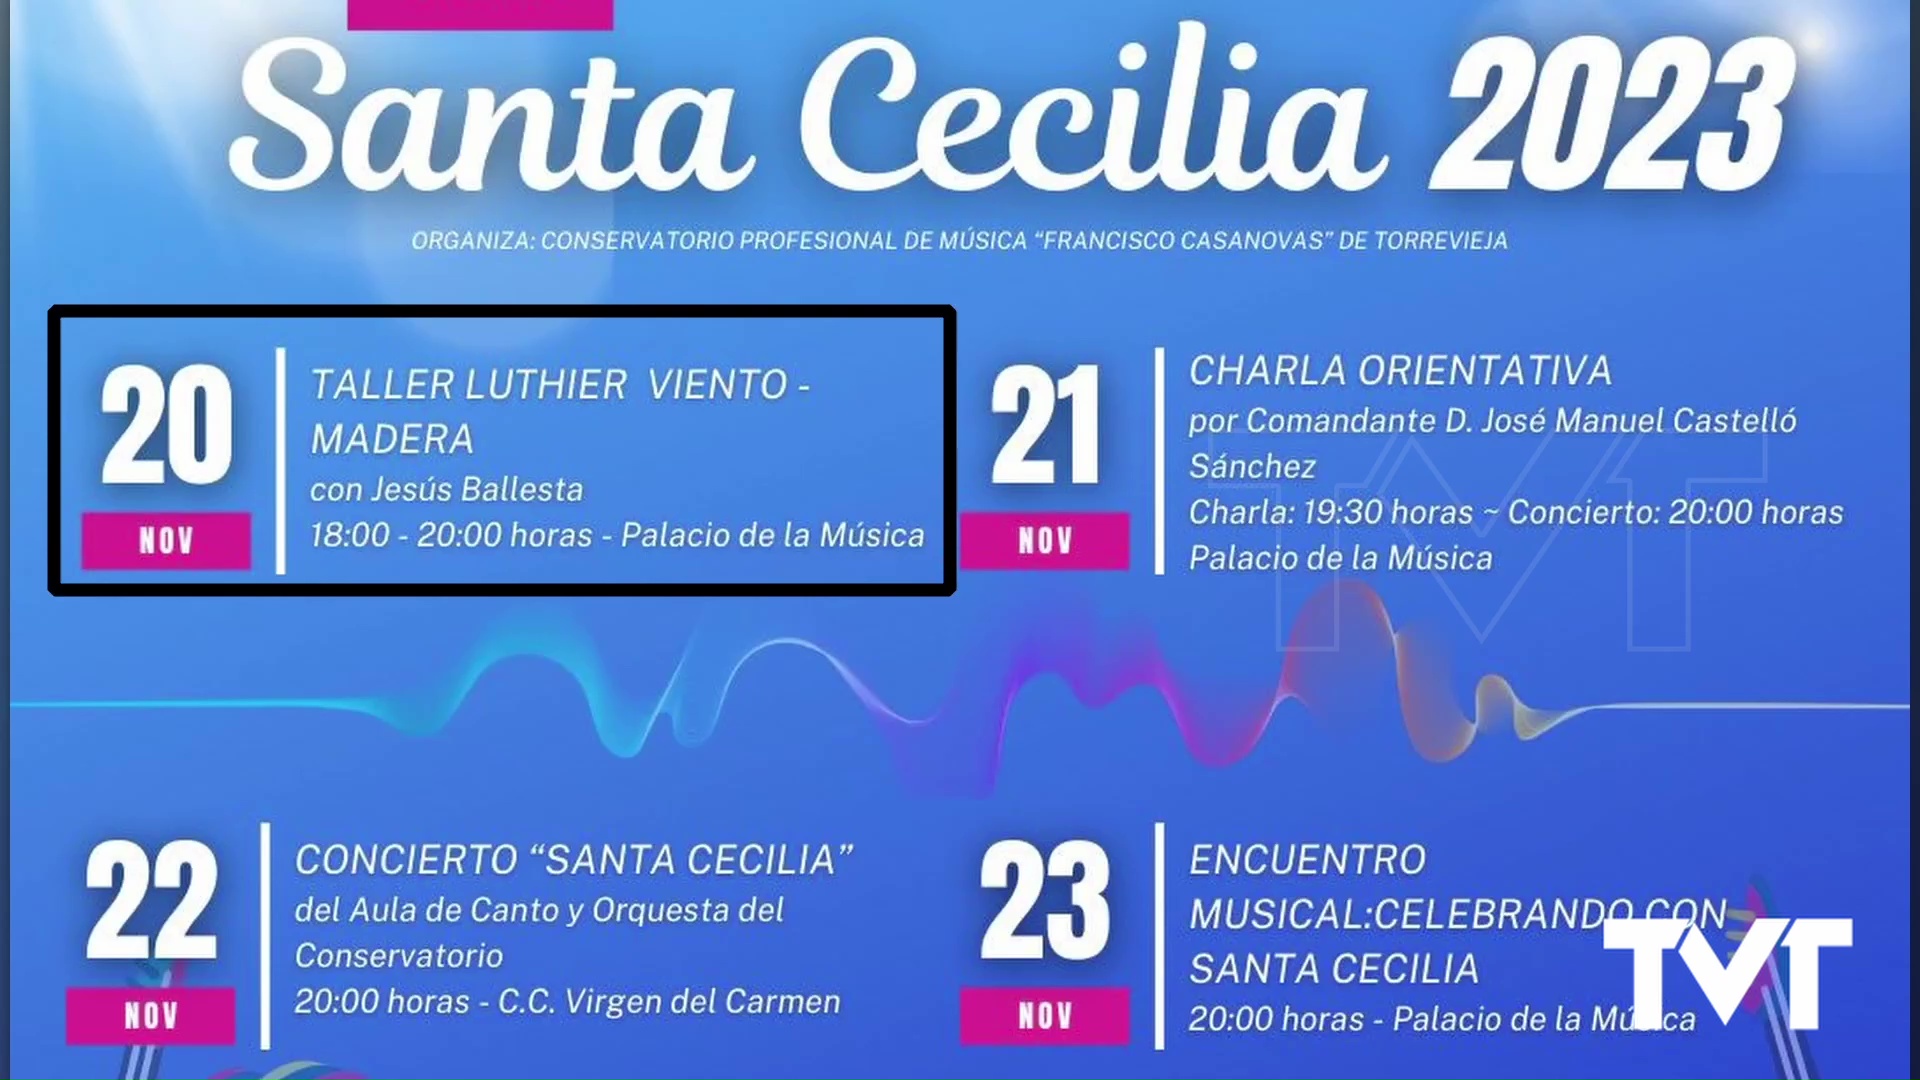 Imagen de El Conservatorio de música Francisco Casanovas contará con el comandante músico José Manuel Castelló para festejar Santa Cecilia 